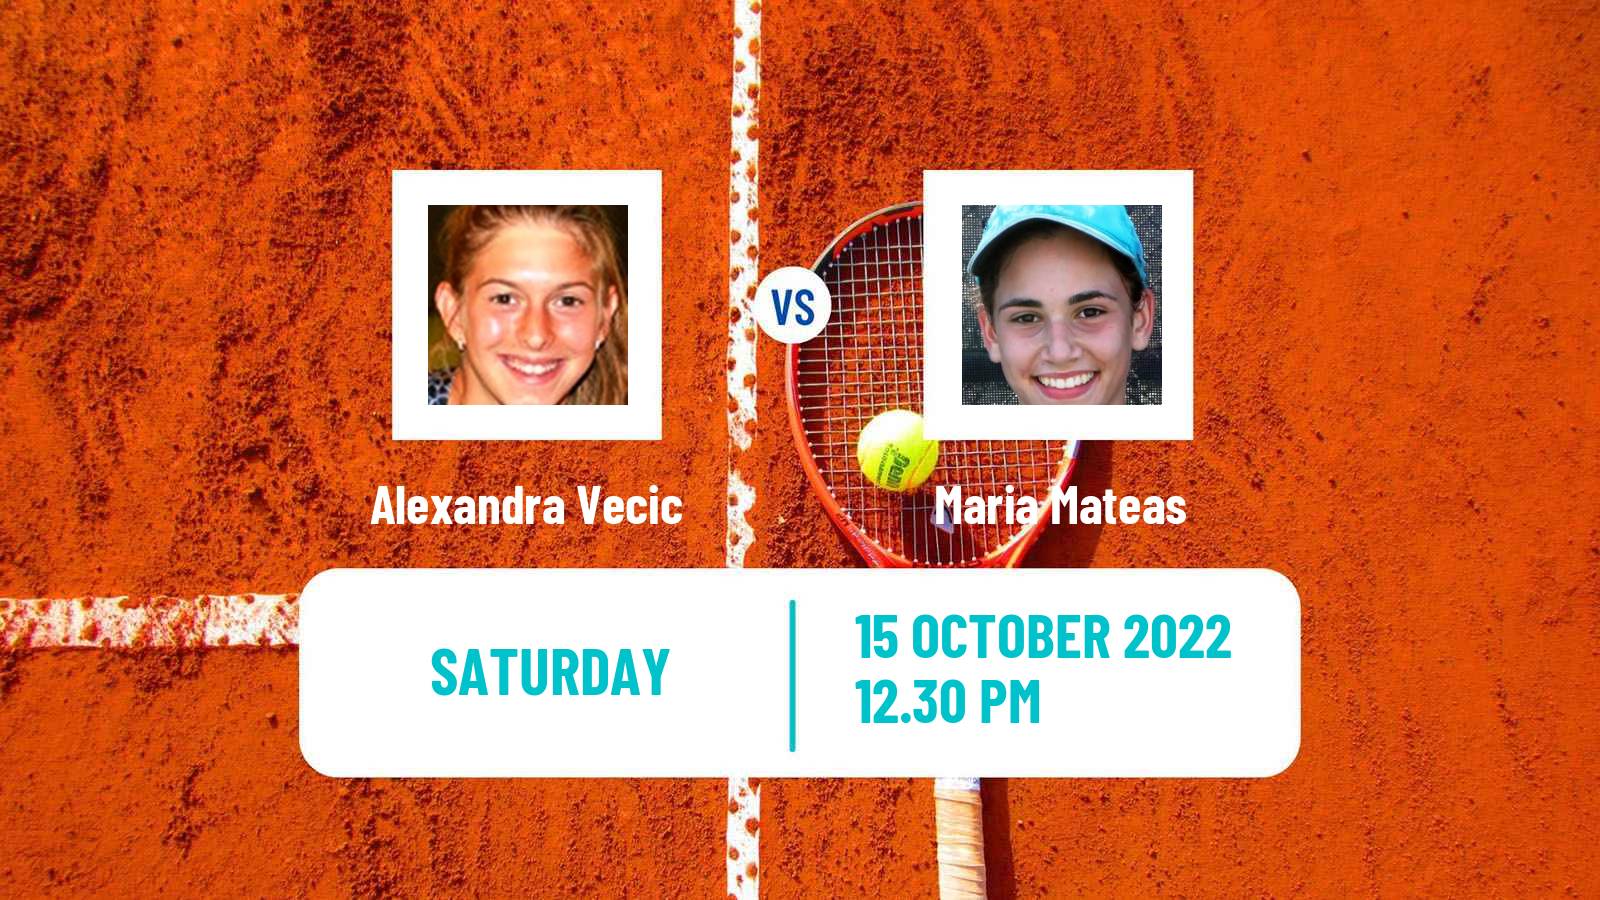 Tennis ITF Tournaments Alexandra Vecic - Maria Mateas